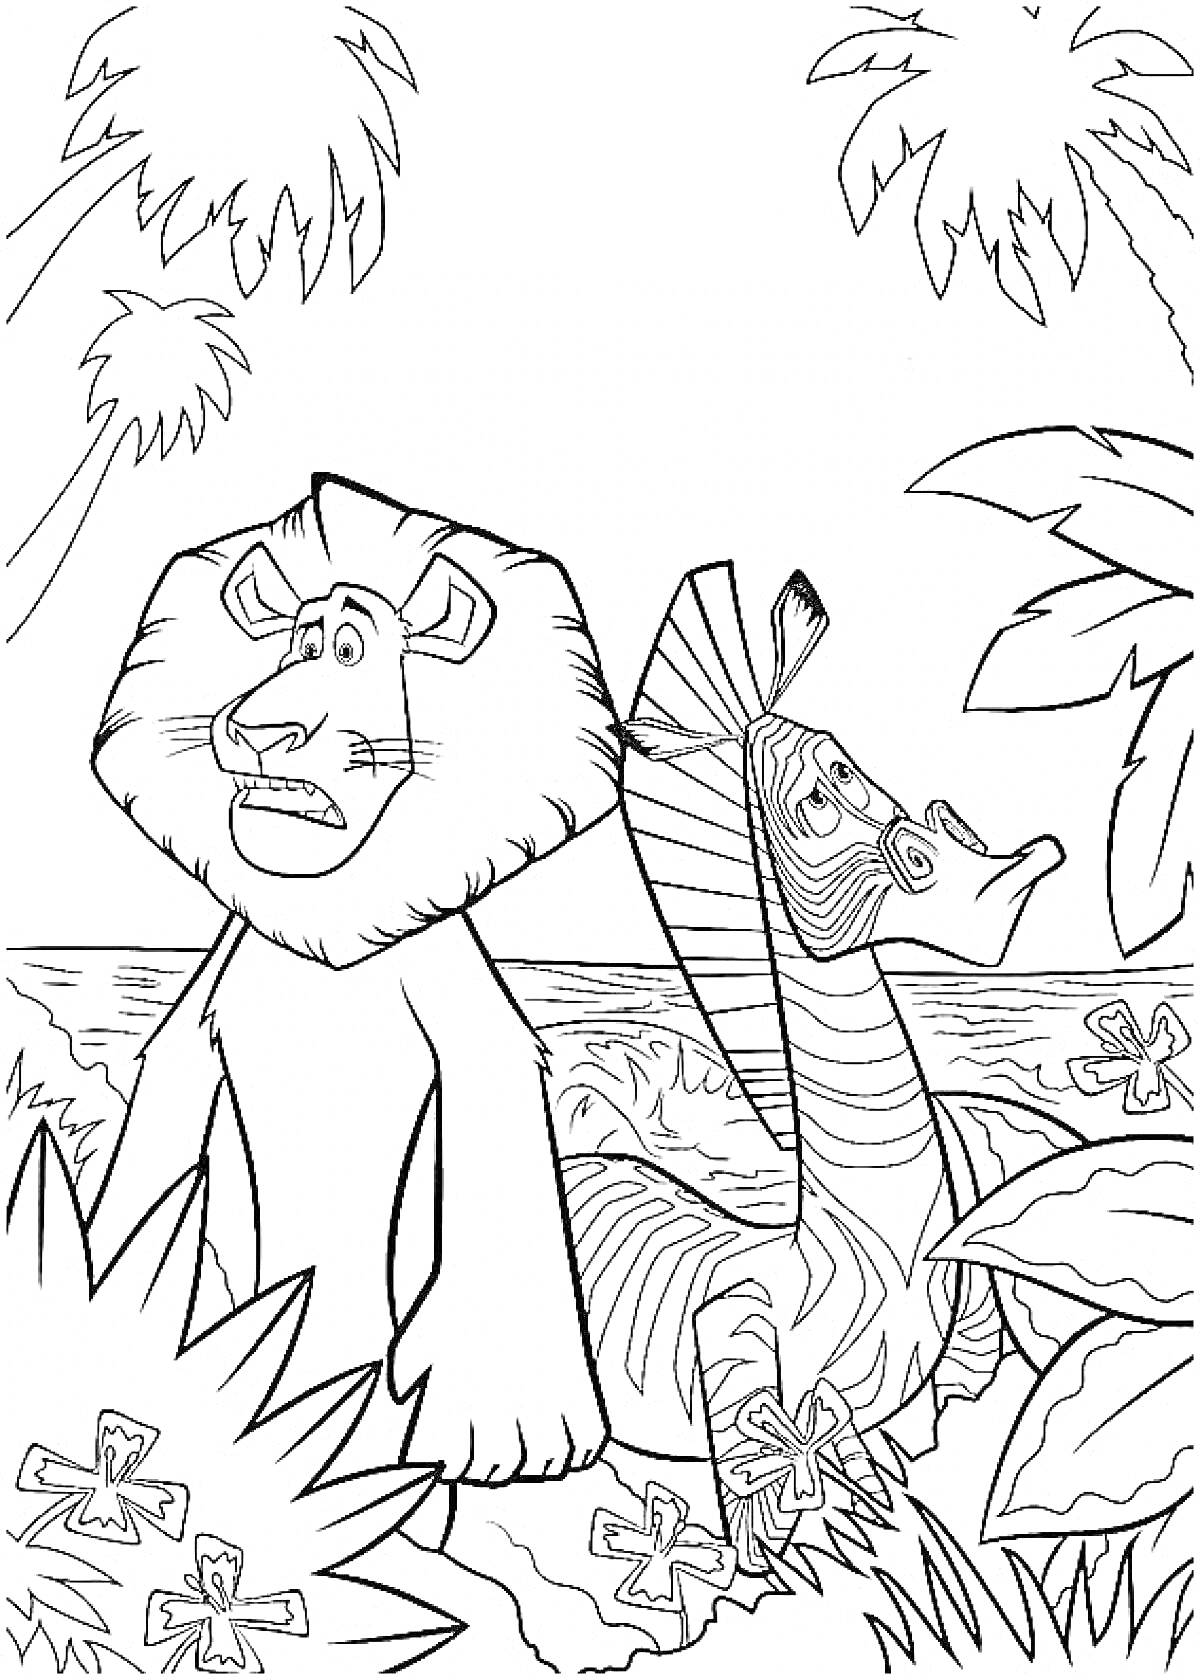 Раскраска Лев и зебра среди пальм на берегу океана